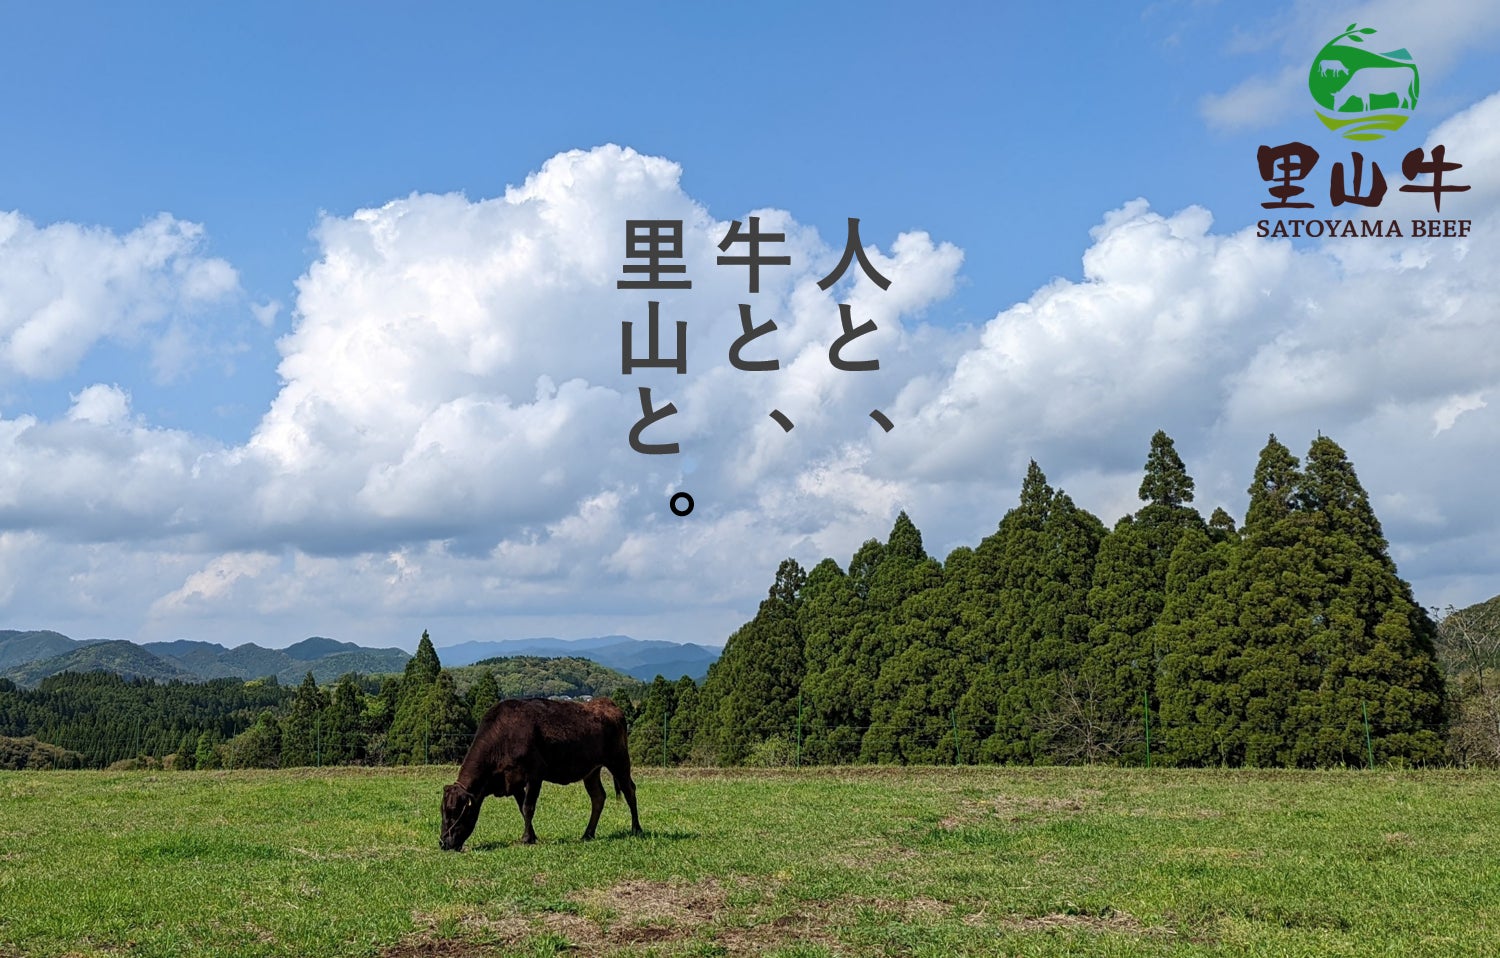 地域資源を最大限活用した「里山牛プロジェクト」がThe Japan Times「Sustainable Japan Award 2022」で優秀賞を受賞のサブ画像2